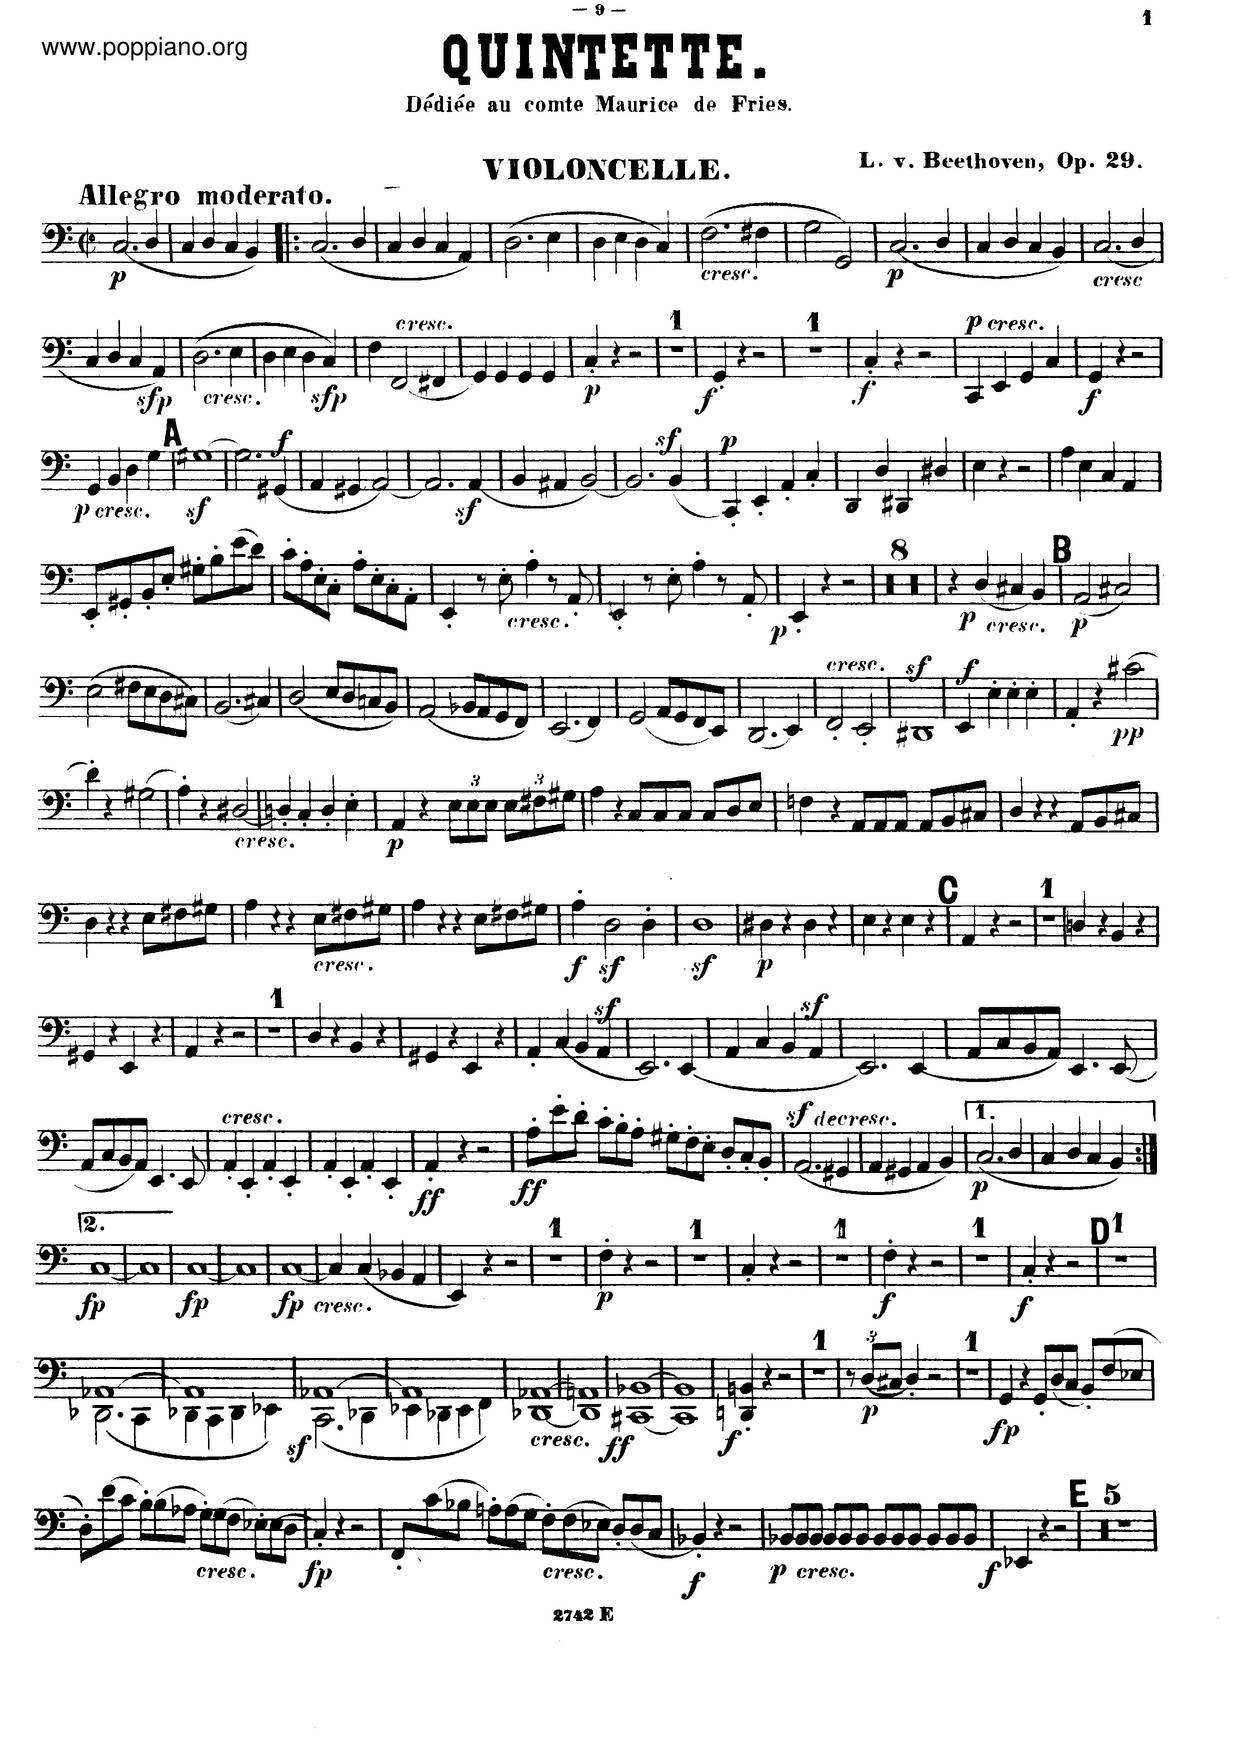 String Quintet In C Major, Op. 29 Score